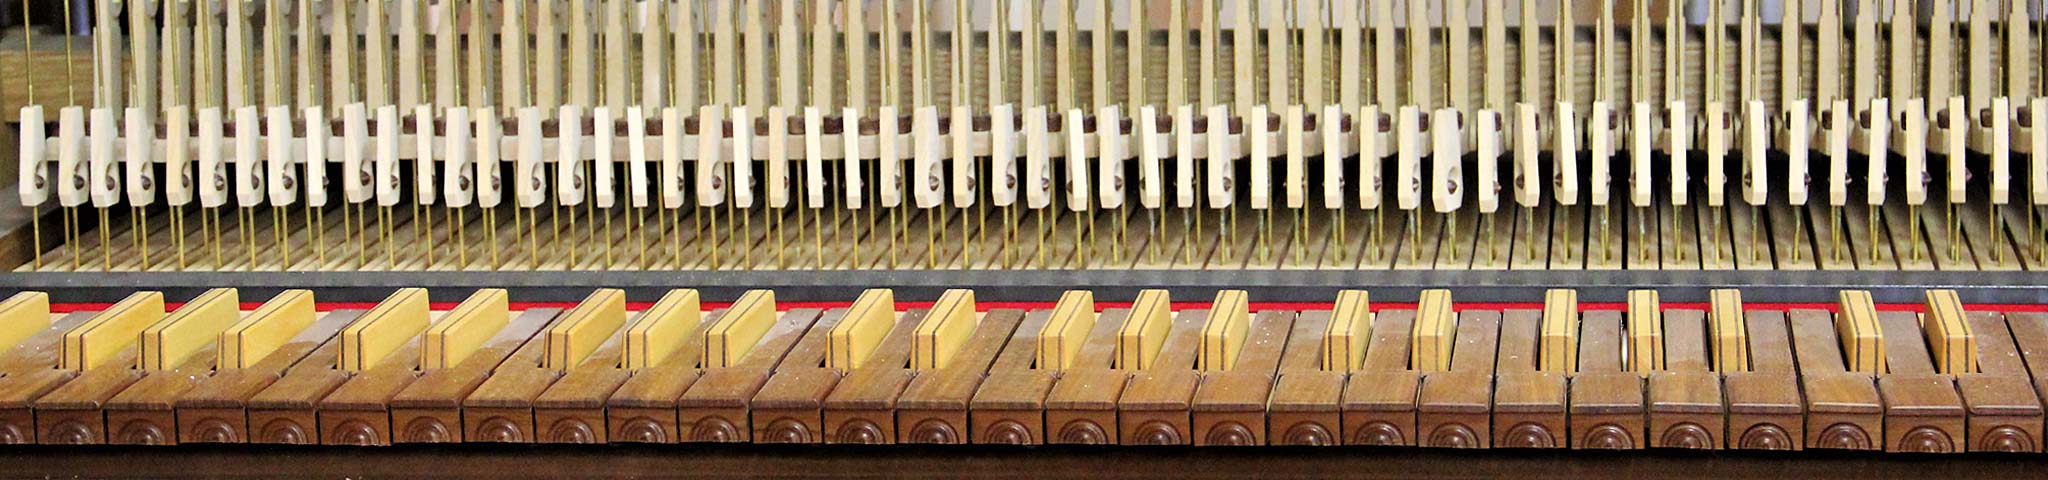 Orgel- und Cembalobau B. Fleig